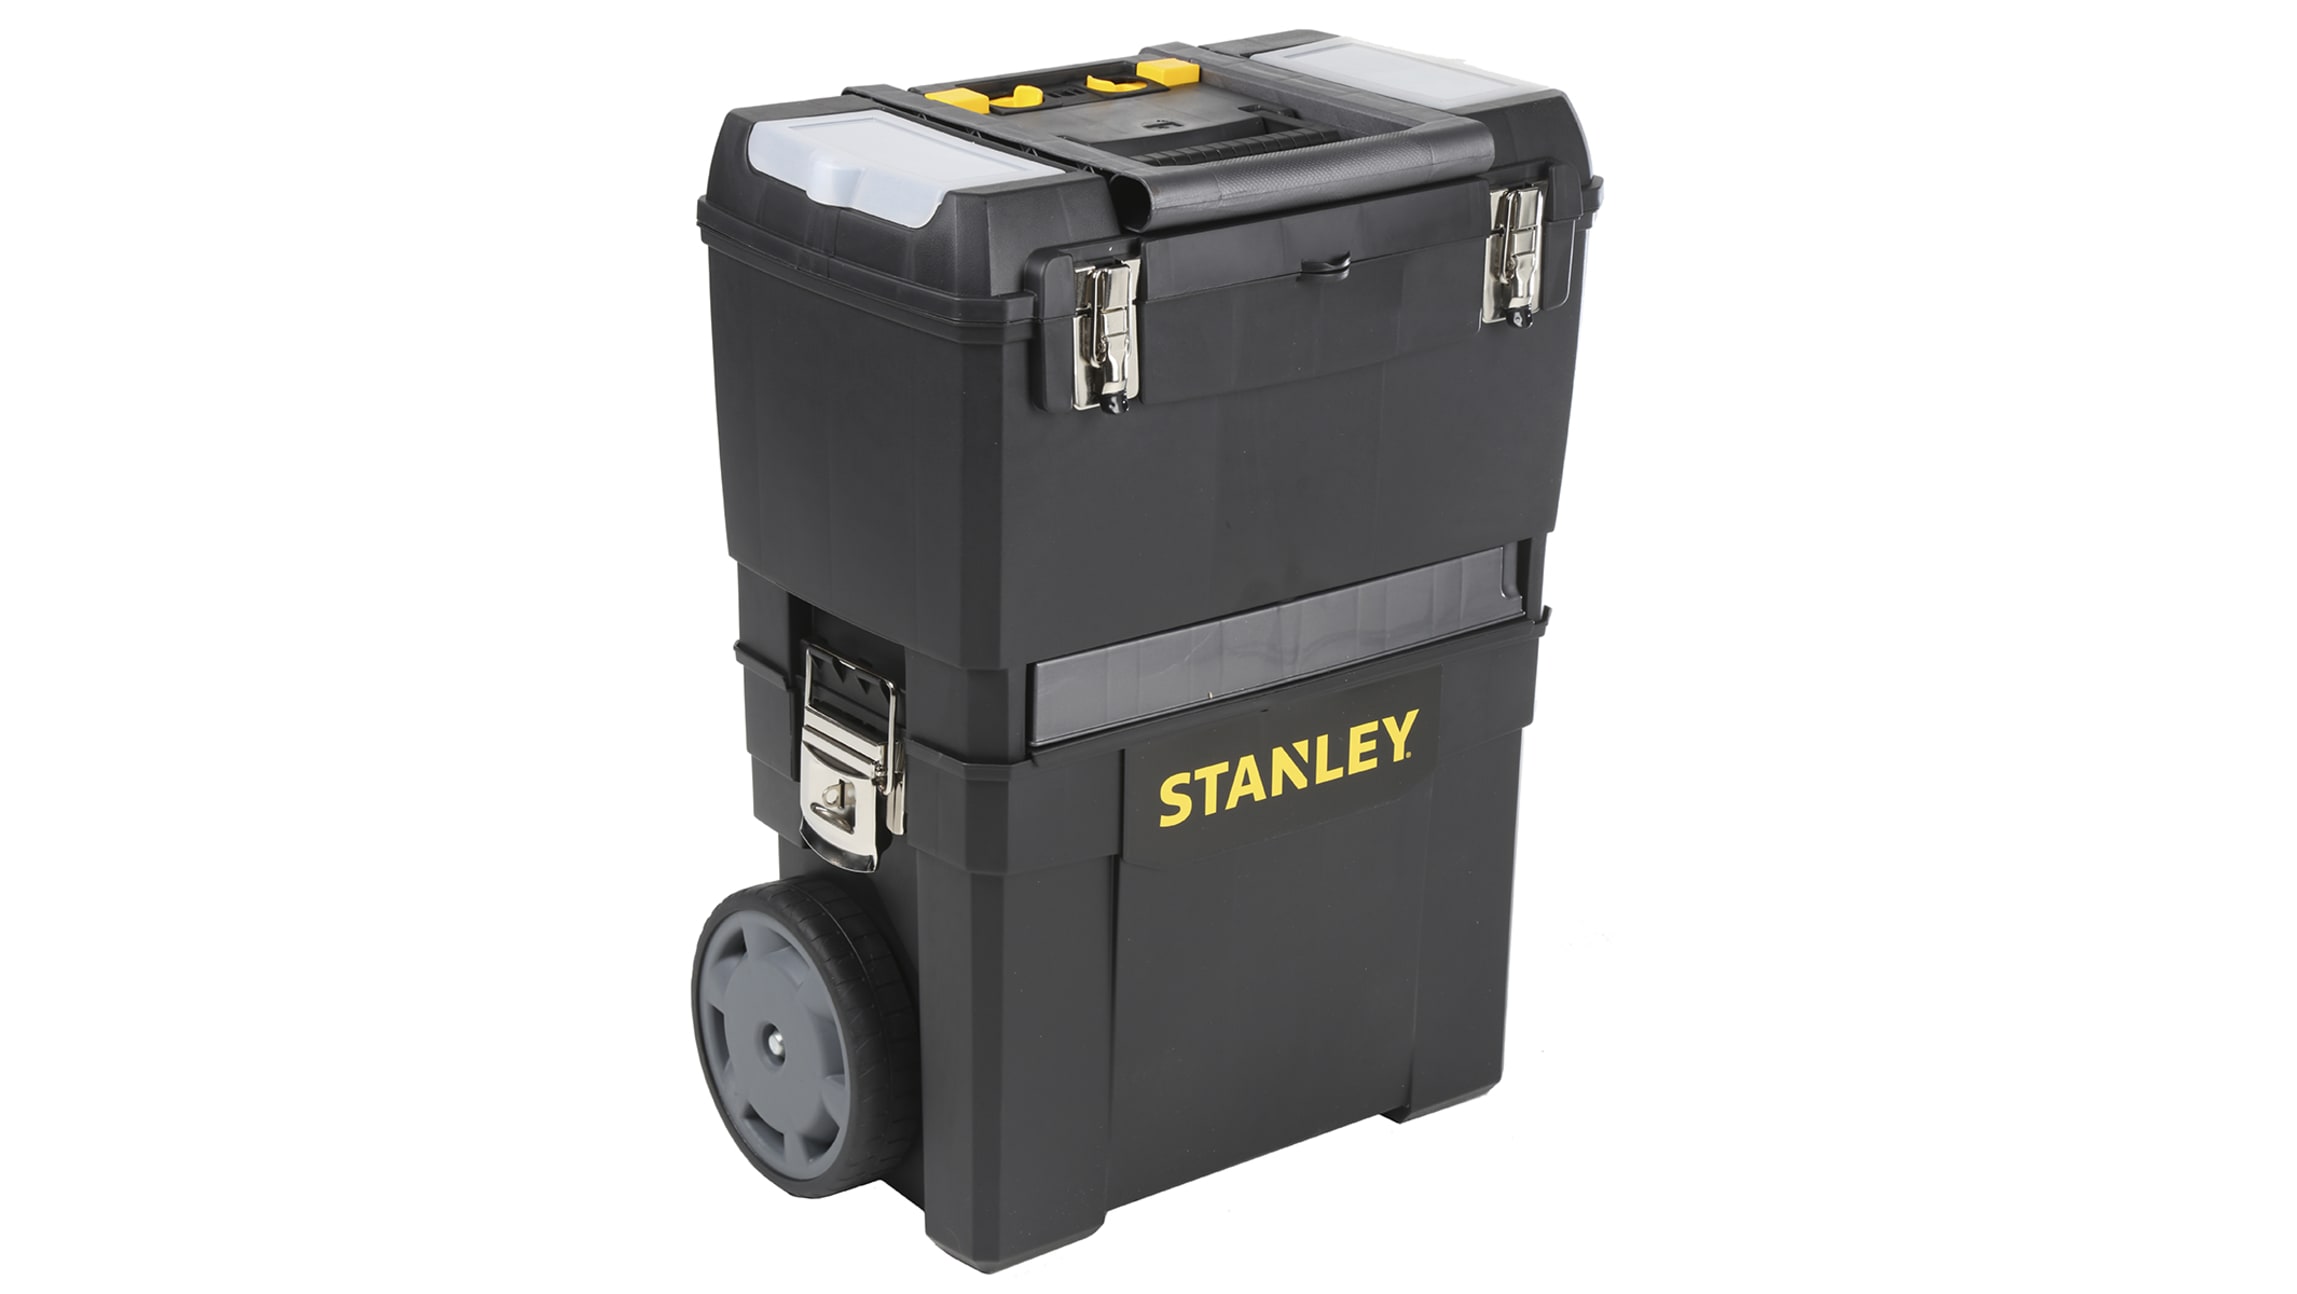 STANLEY - Taller móvil metálico de gran capacidad con bandeja extraíble, 3  cajones, ruedas y asa de transporte